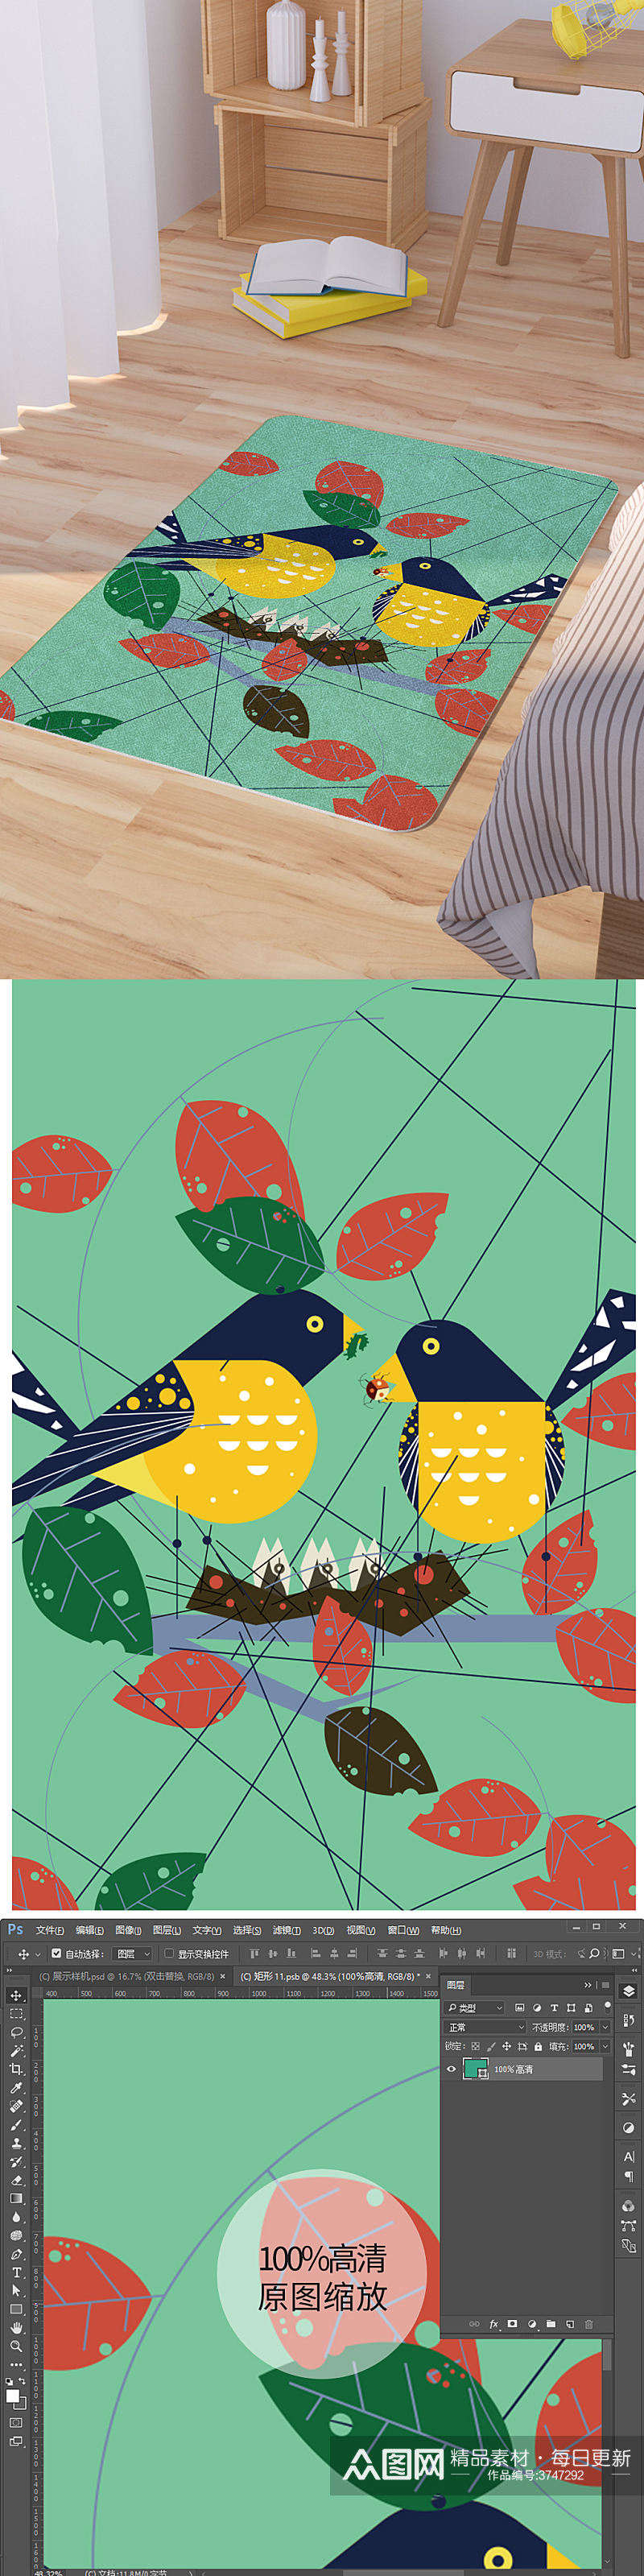 矢量手绘卡通可爱鸟筑巢脚垫地毯图案素材